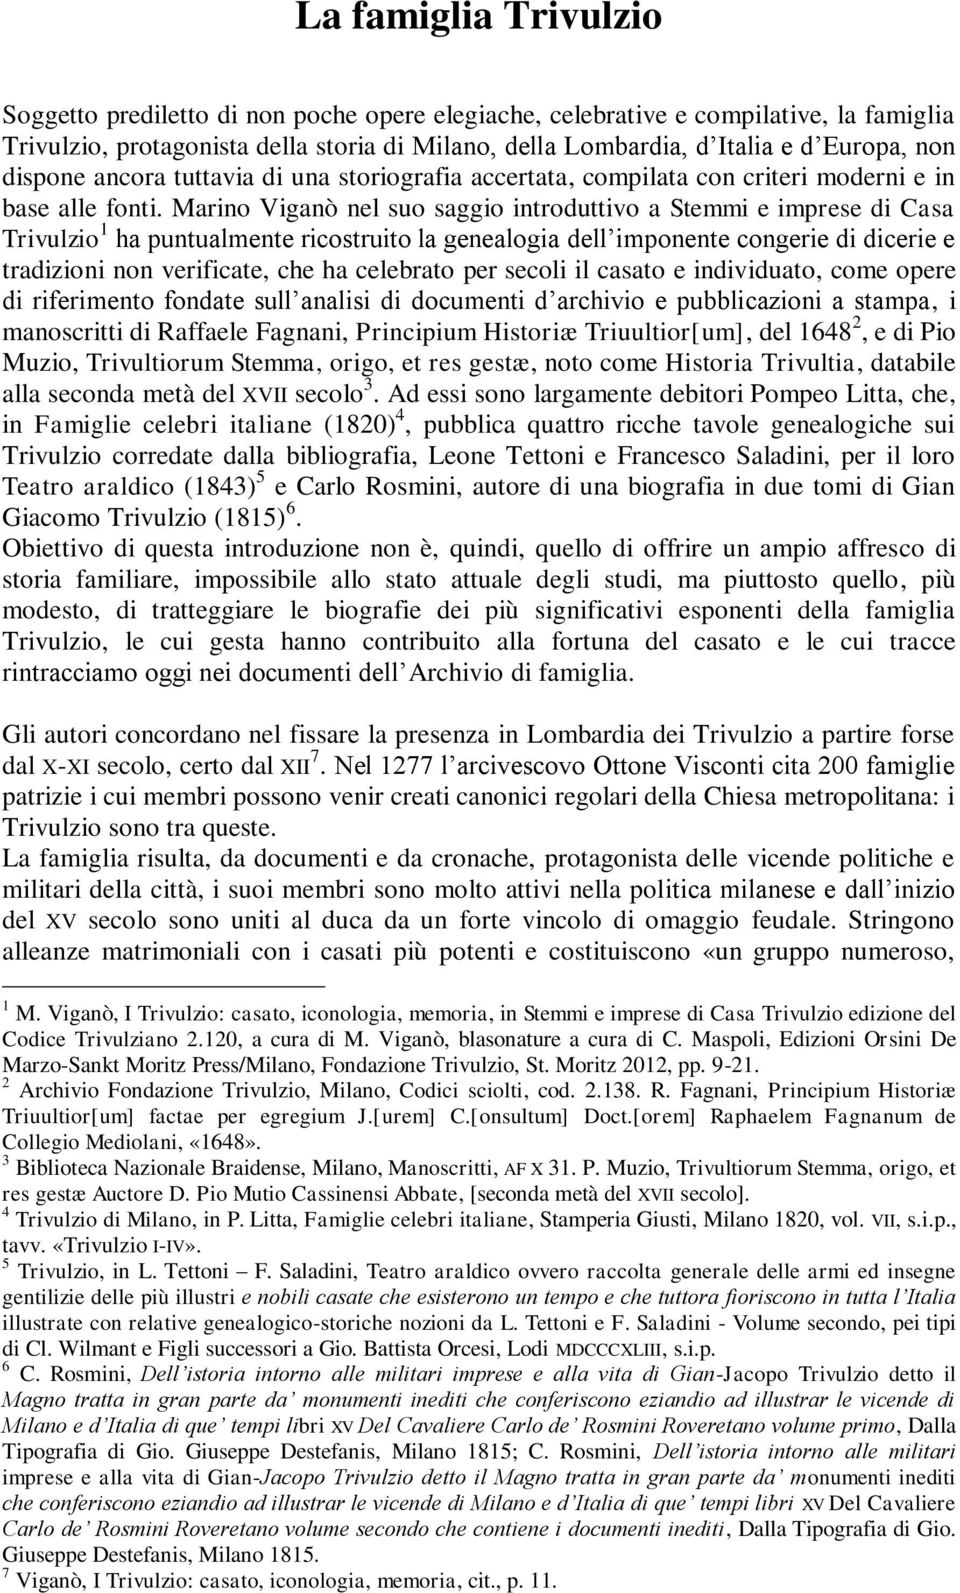 Marino Viganò nel suo saggio introduttivo a Stemmi e imprese di Casa Trivulzio 1 ha puntualmente ricostruito la genealogia dell imponente congerie di dicerie e tradizioni non verificate, che ha